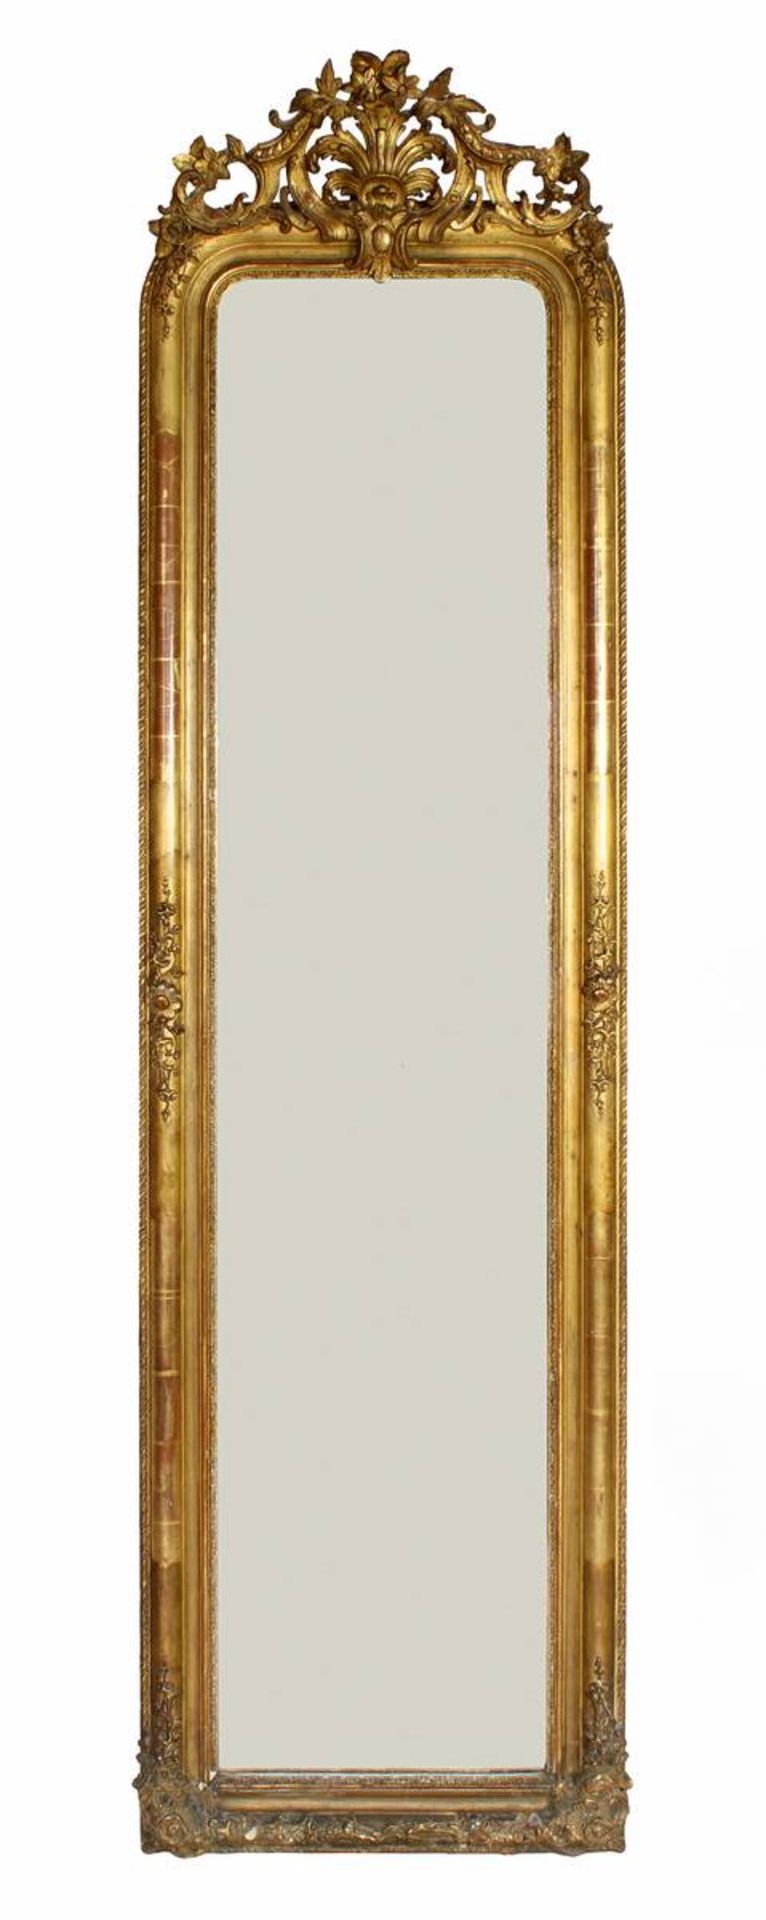 Trumeau Spiegel, wohl Frankreich Mitte 19. Jh., hochrechteckige Form, Nadelholz beschnitzt,